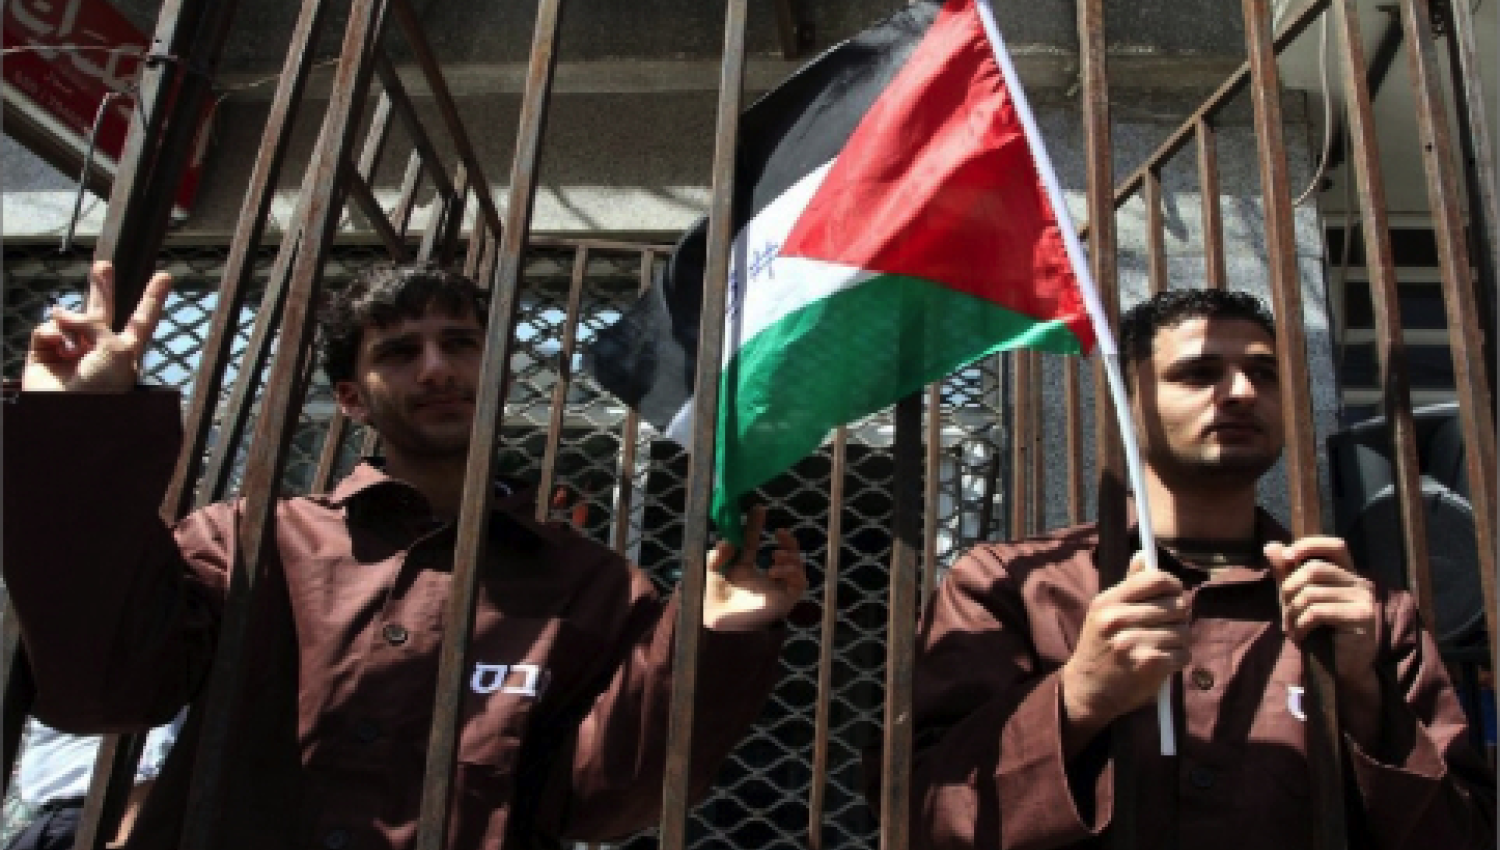 4450 أسير فلسطيني في مواجهة مصلحة سجون الاحتلال!